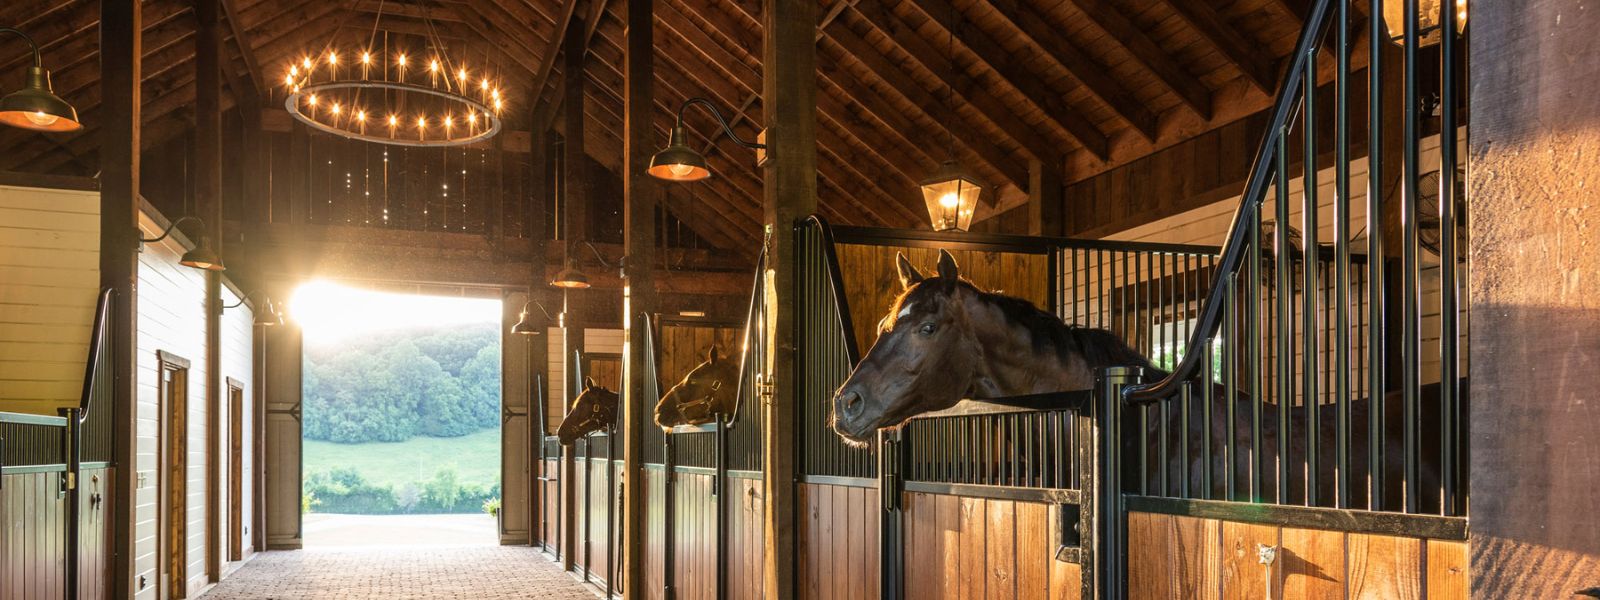 inside horse barns